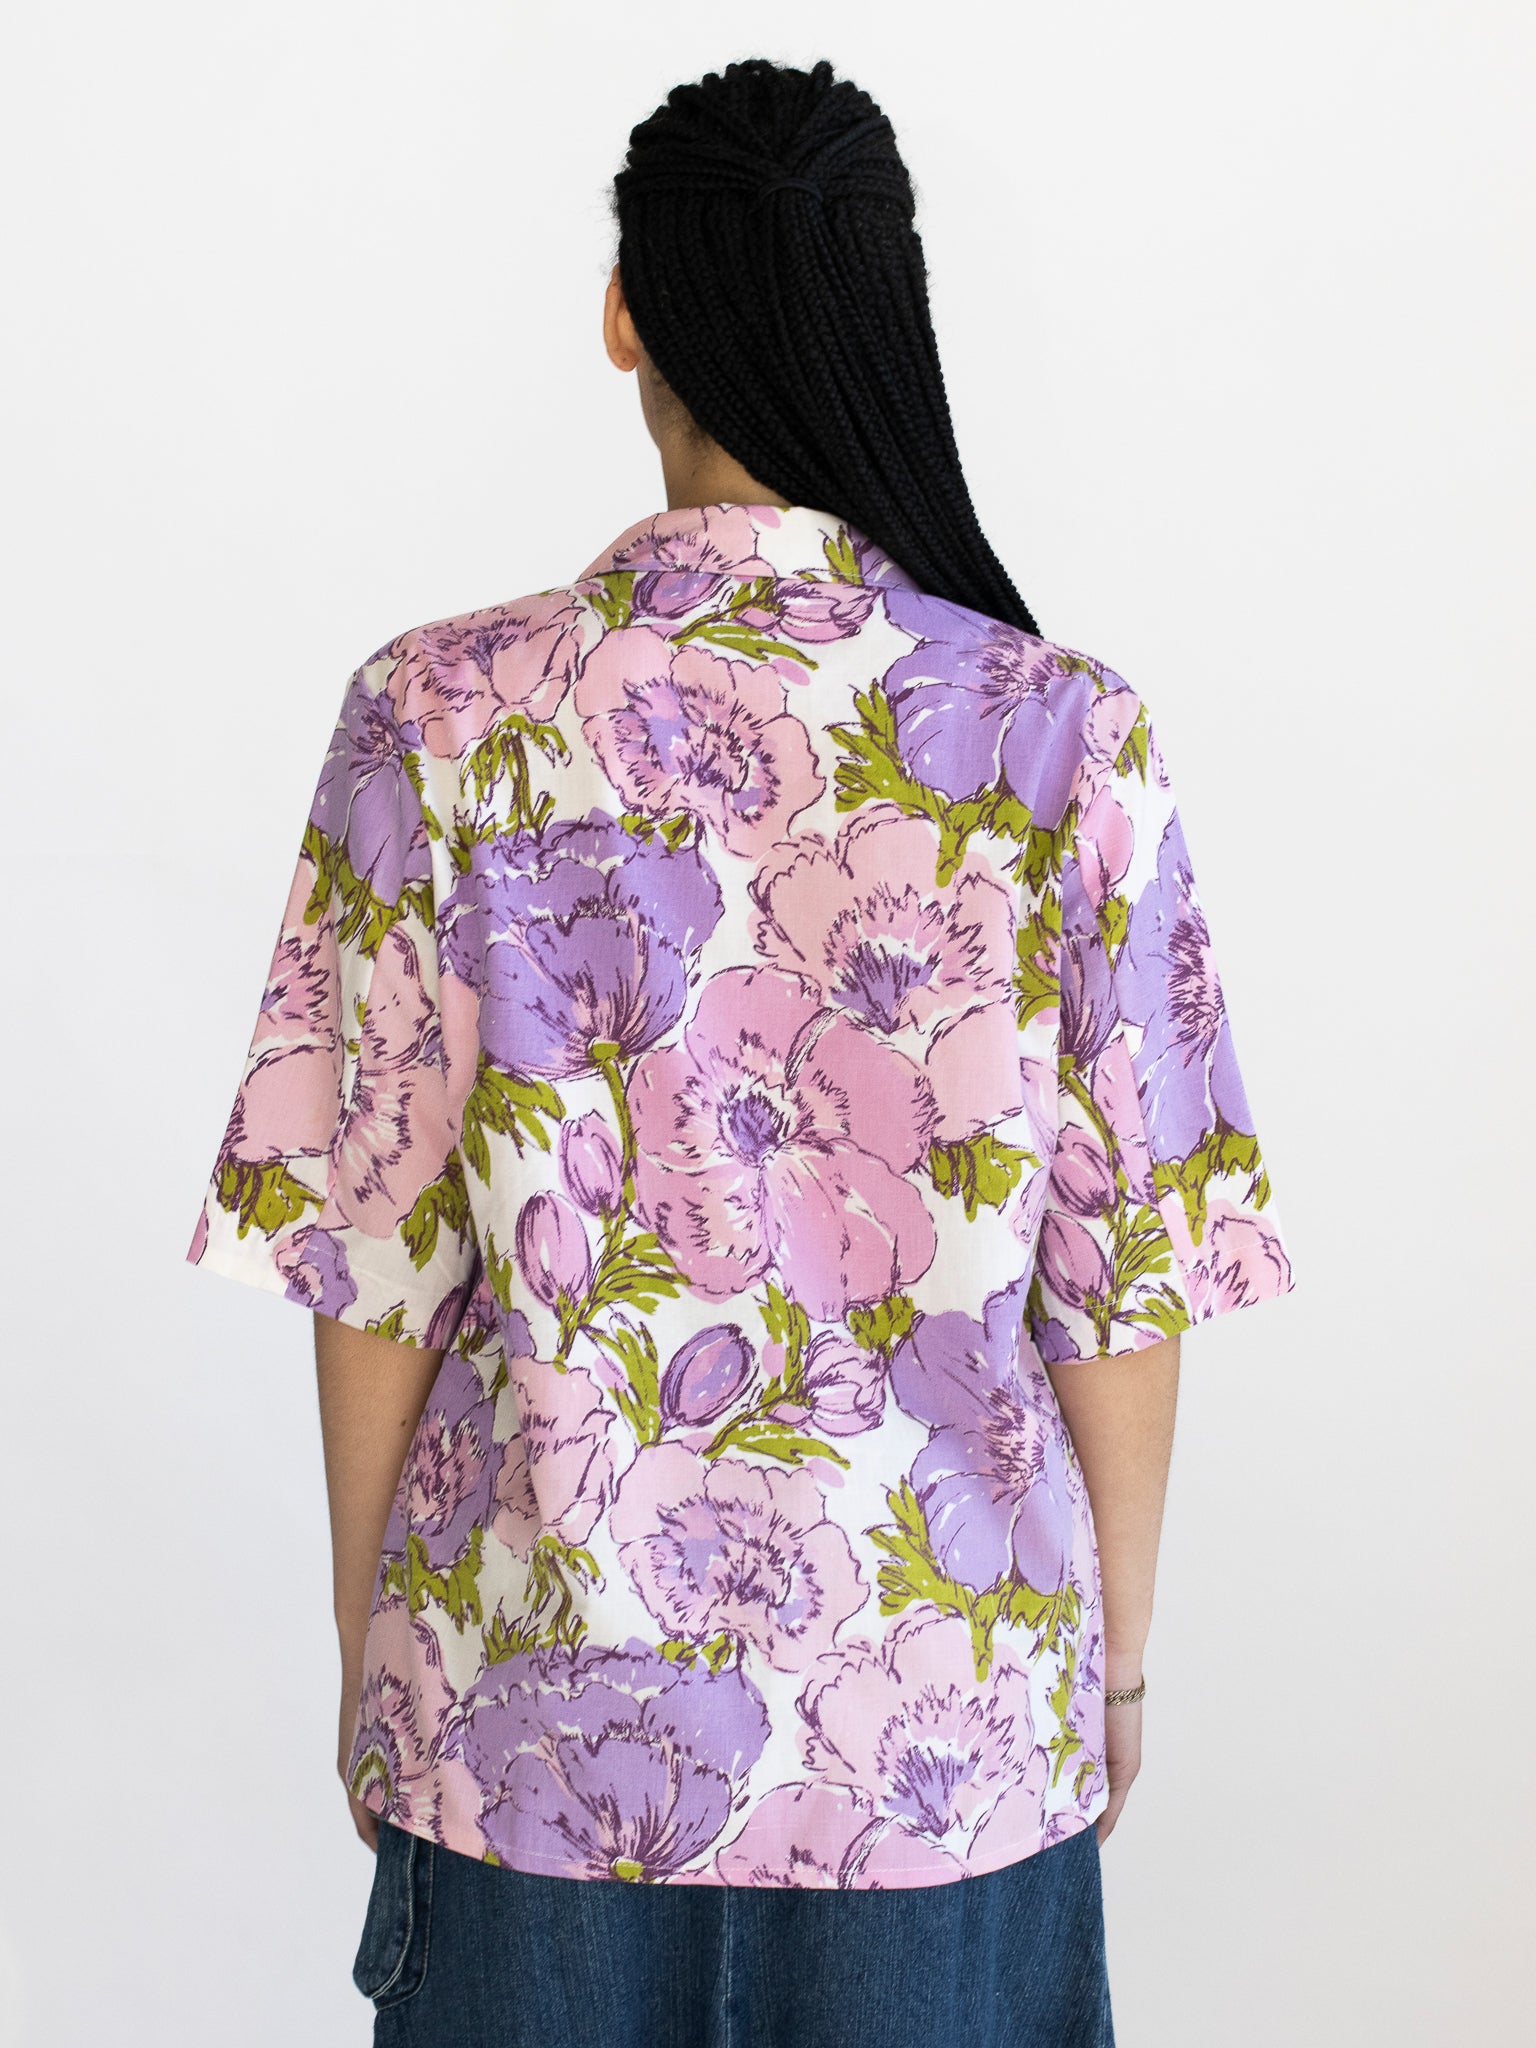 The Series - Lilac Floral Chore Shirt (L/XL)